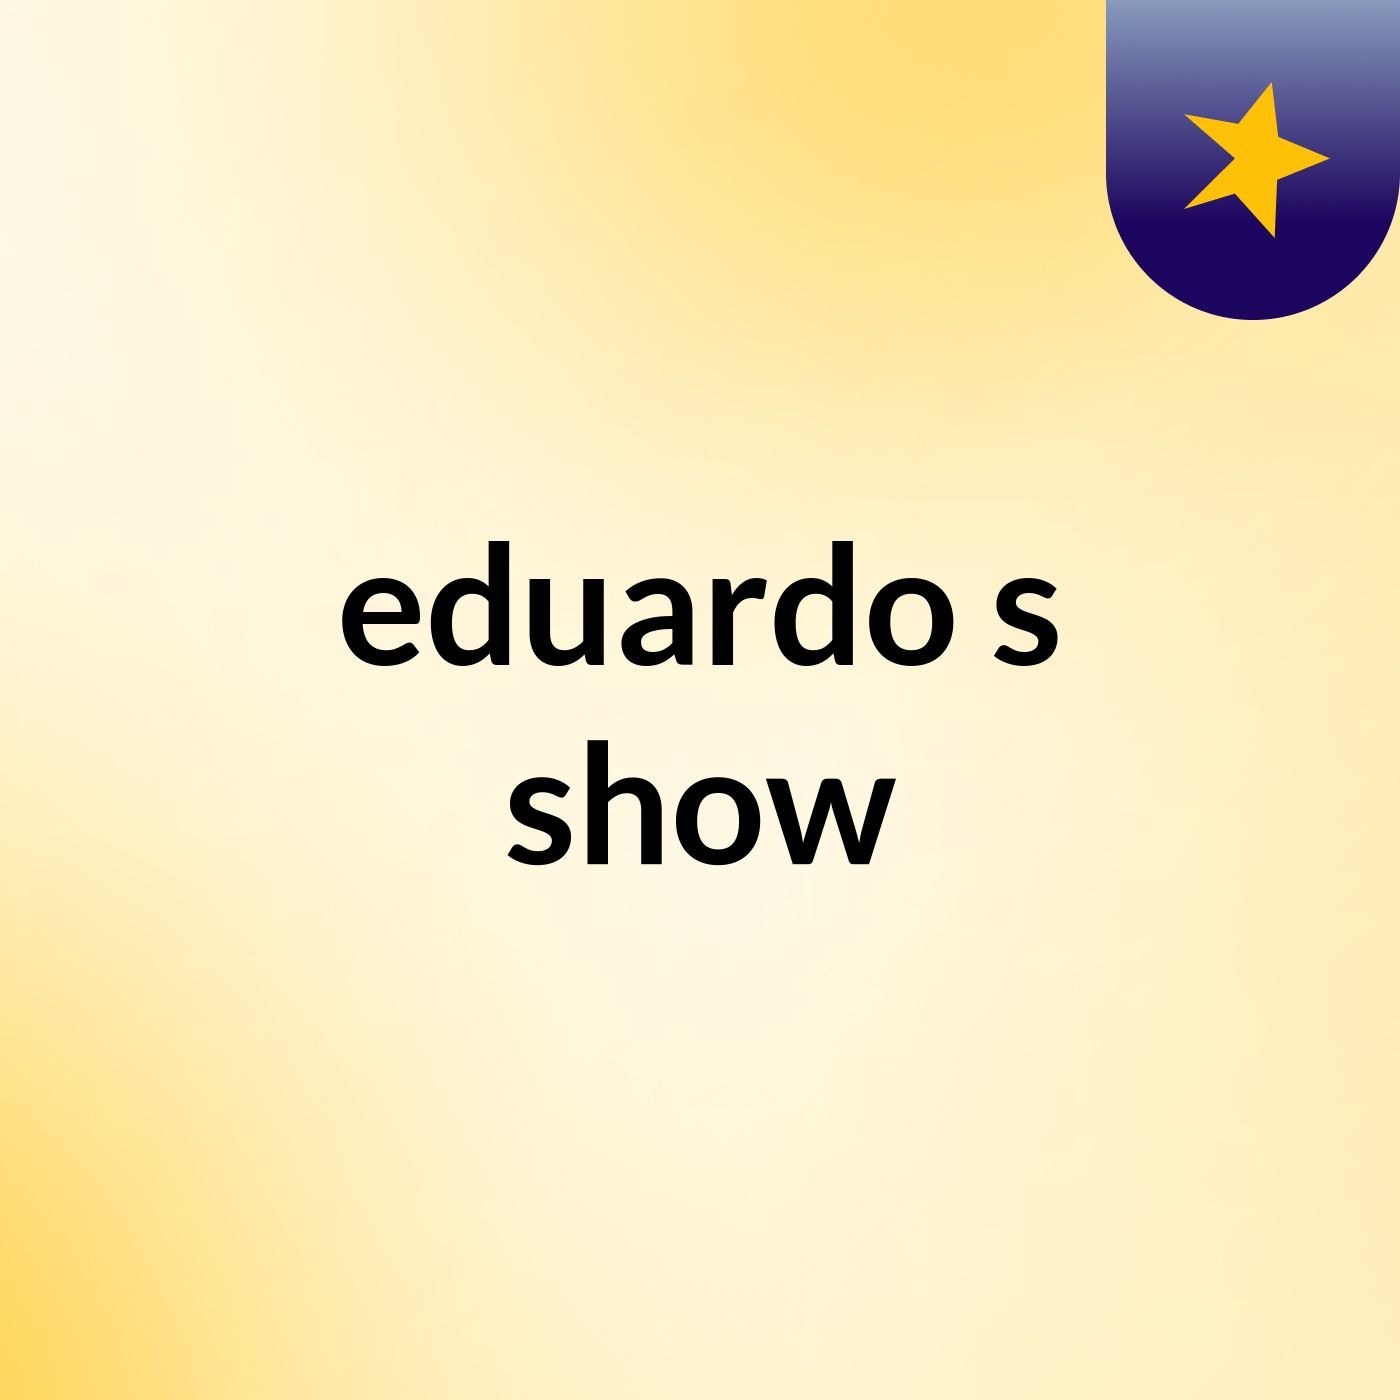 eduardo's show